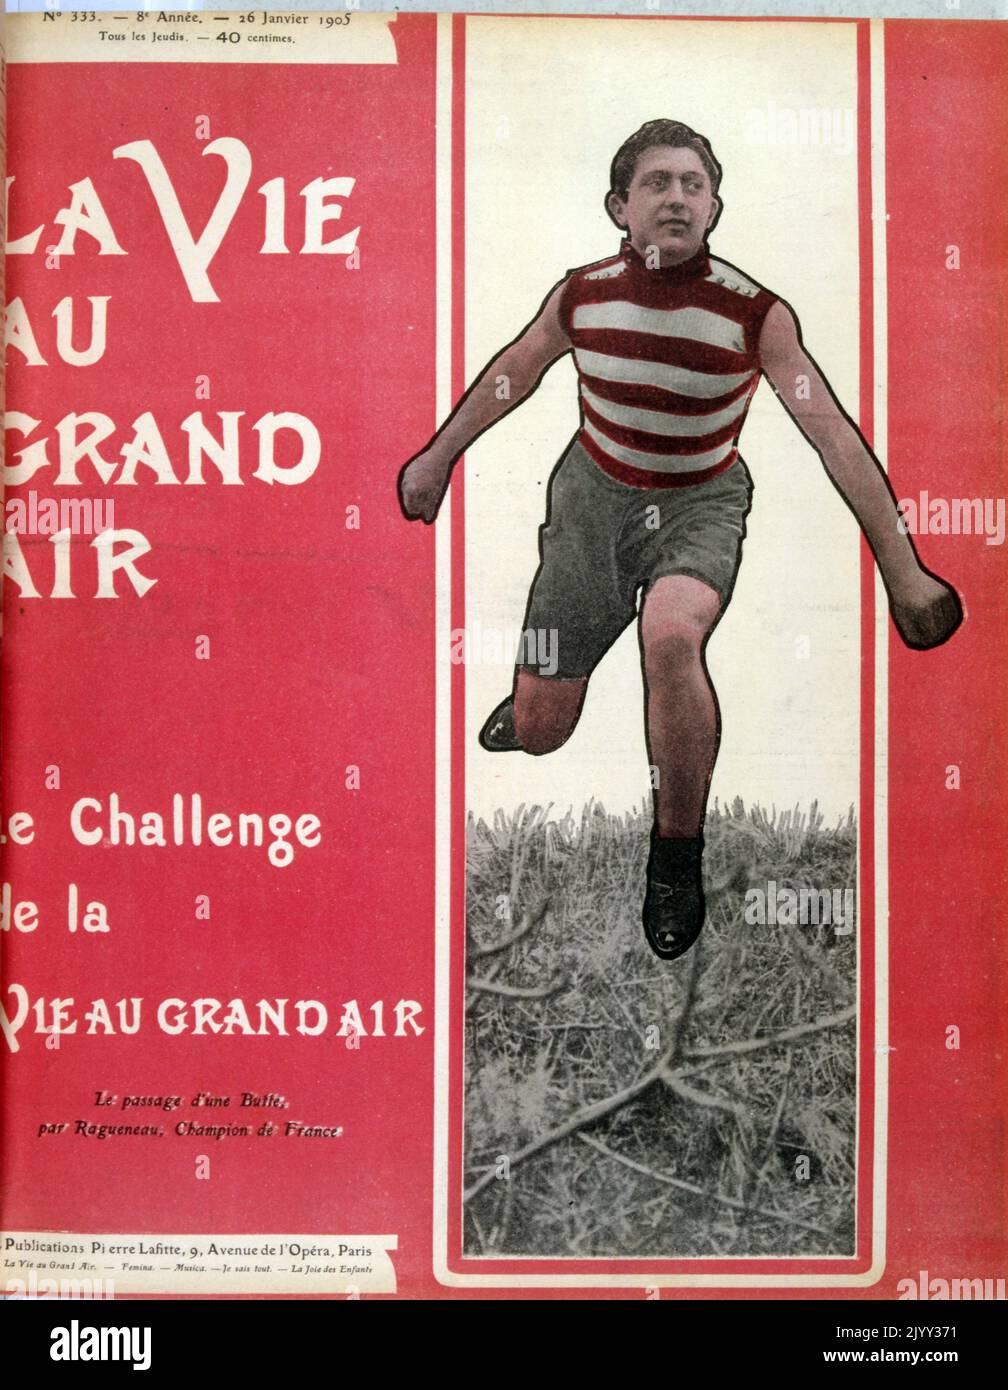 Vintage, farbige Fotografie eines Langlaufläufers in Frankreich 1905 Stockfoto